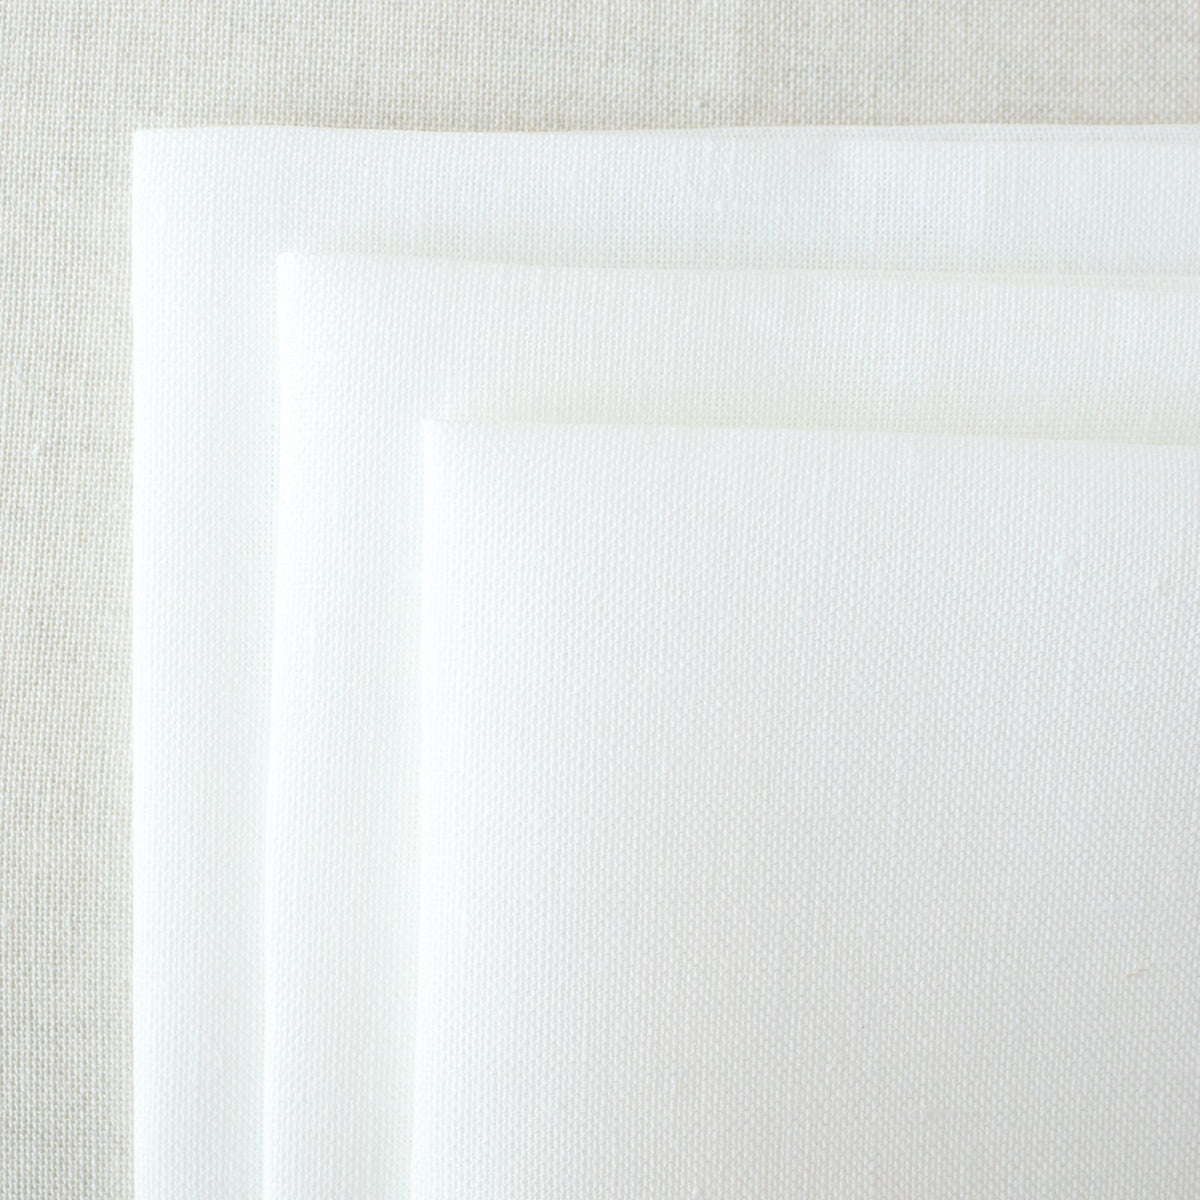 Cashel Antique White Linen Fabric - 28 count